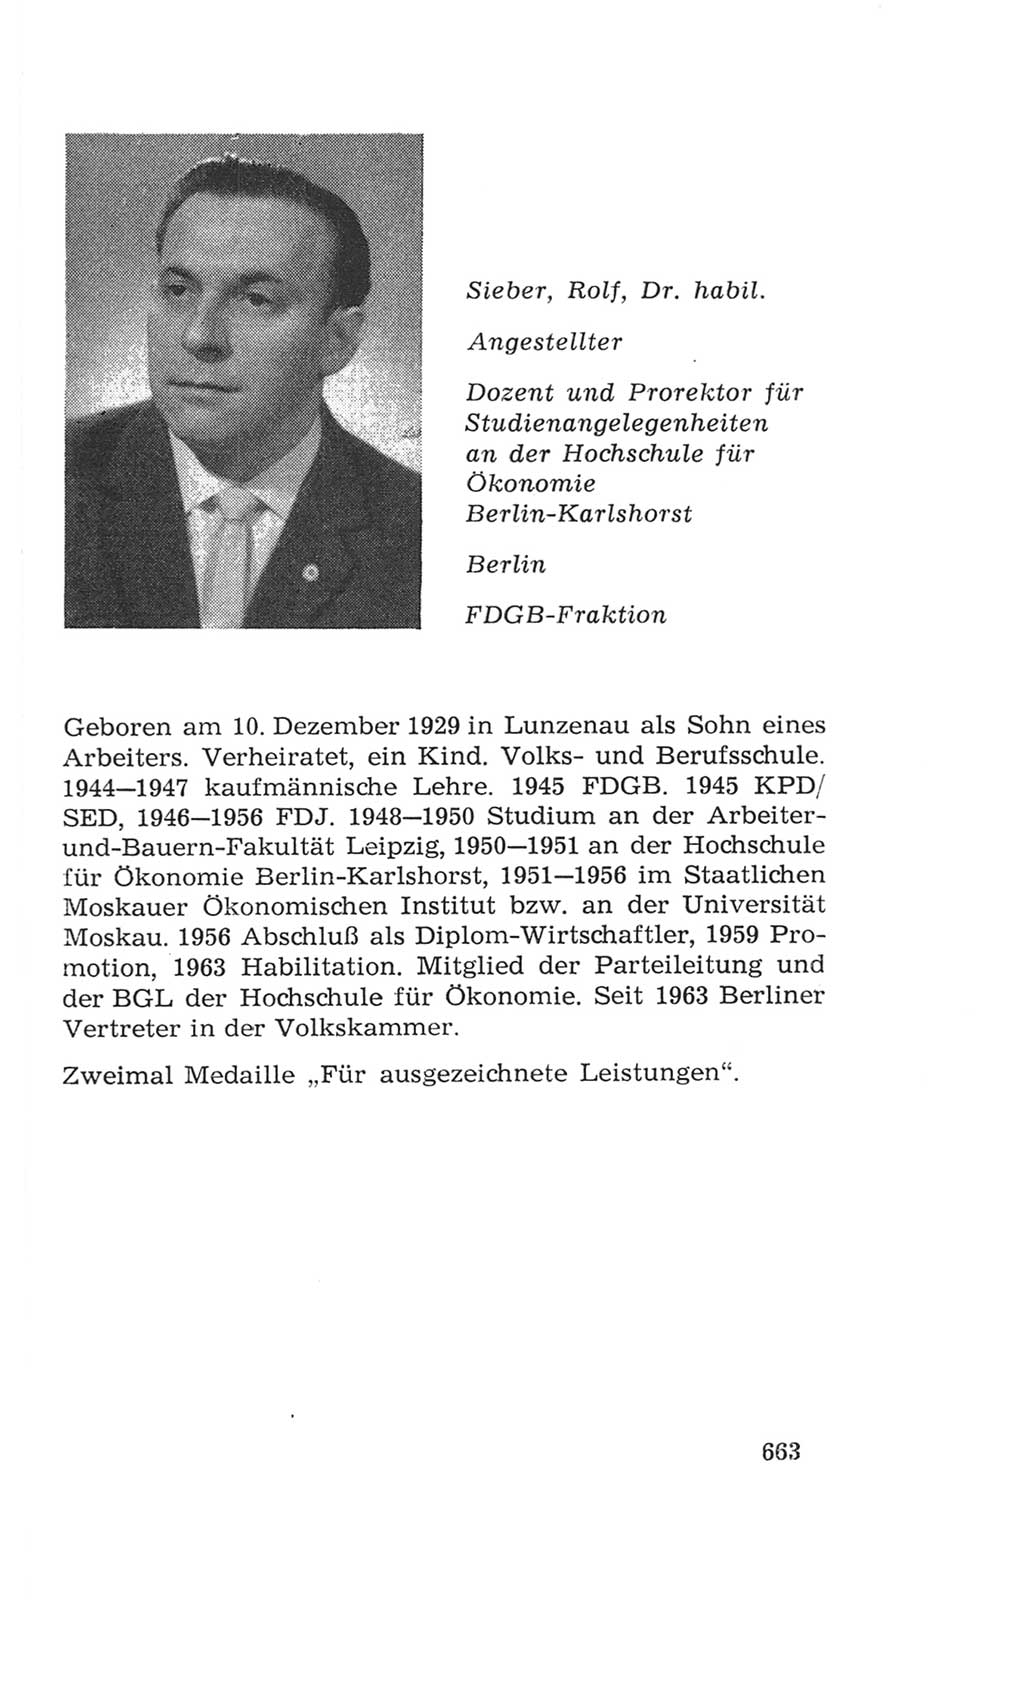 Volkskammer (VK) der Deutschen Demokratischen Republik (DDR), 4. Wahlperiode 1963-1967, Seite 663 (VK. DDR 4. WP. 1963-1967, S. 663)